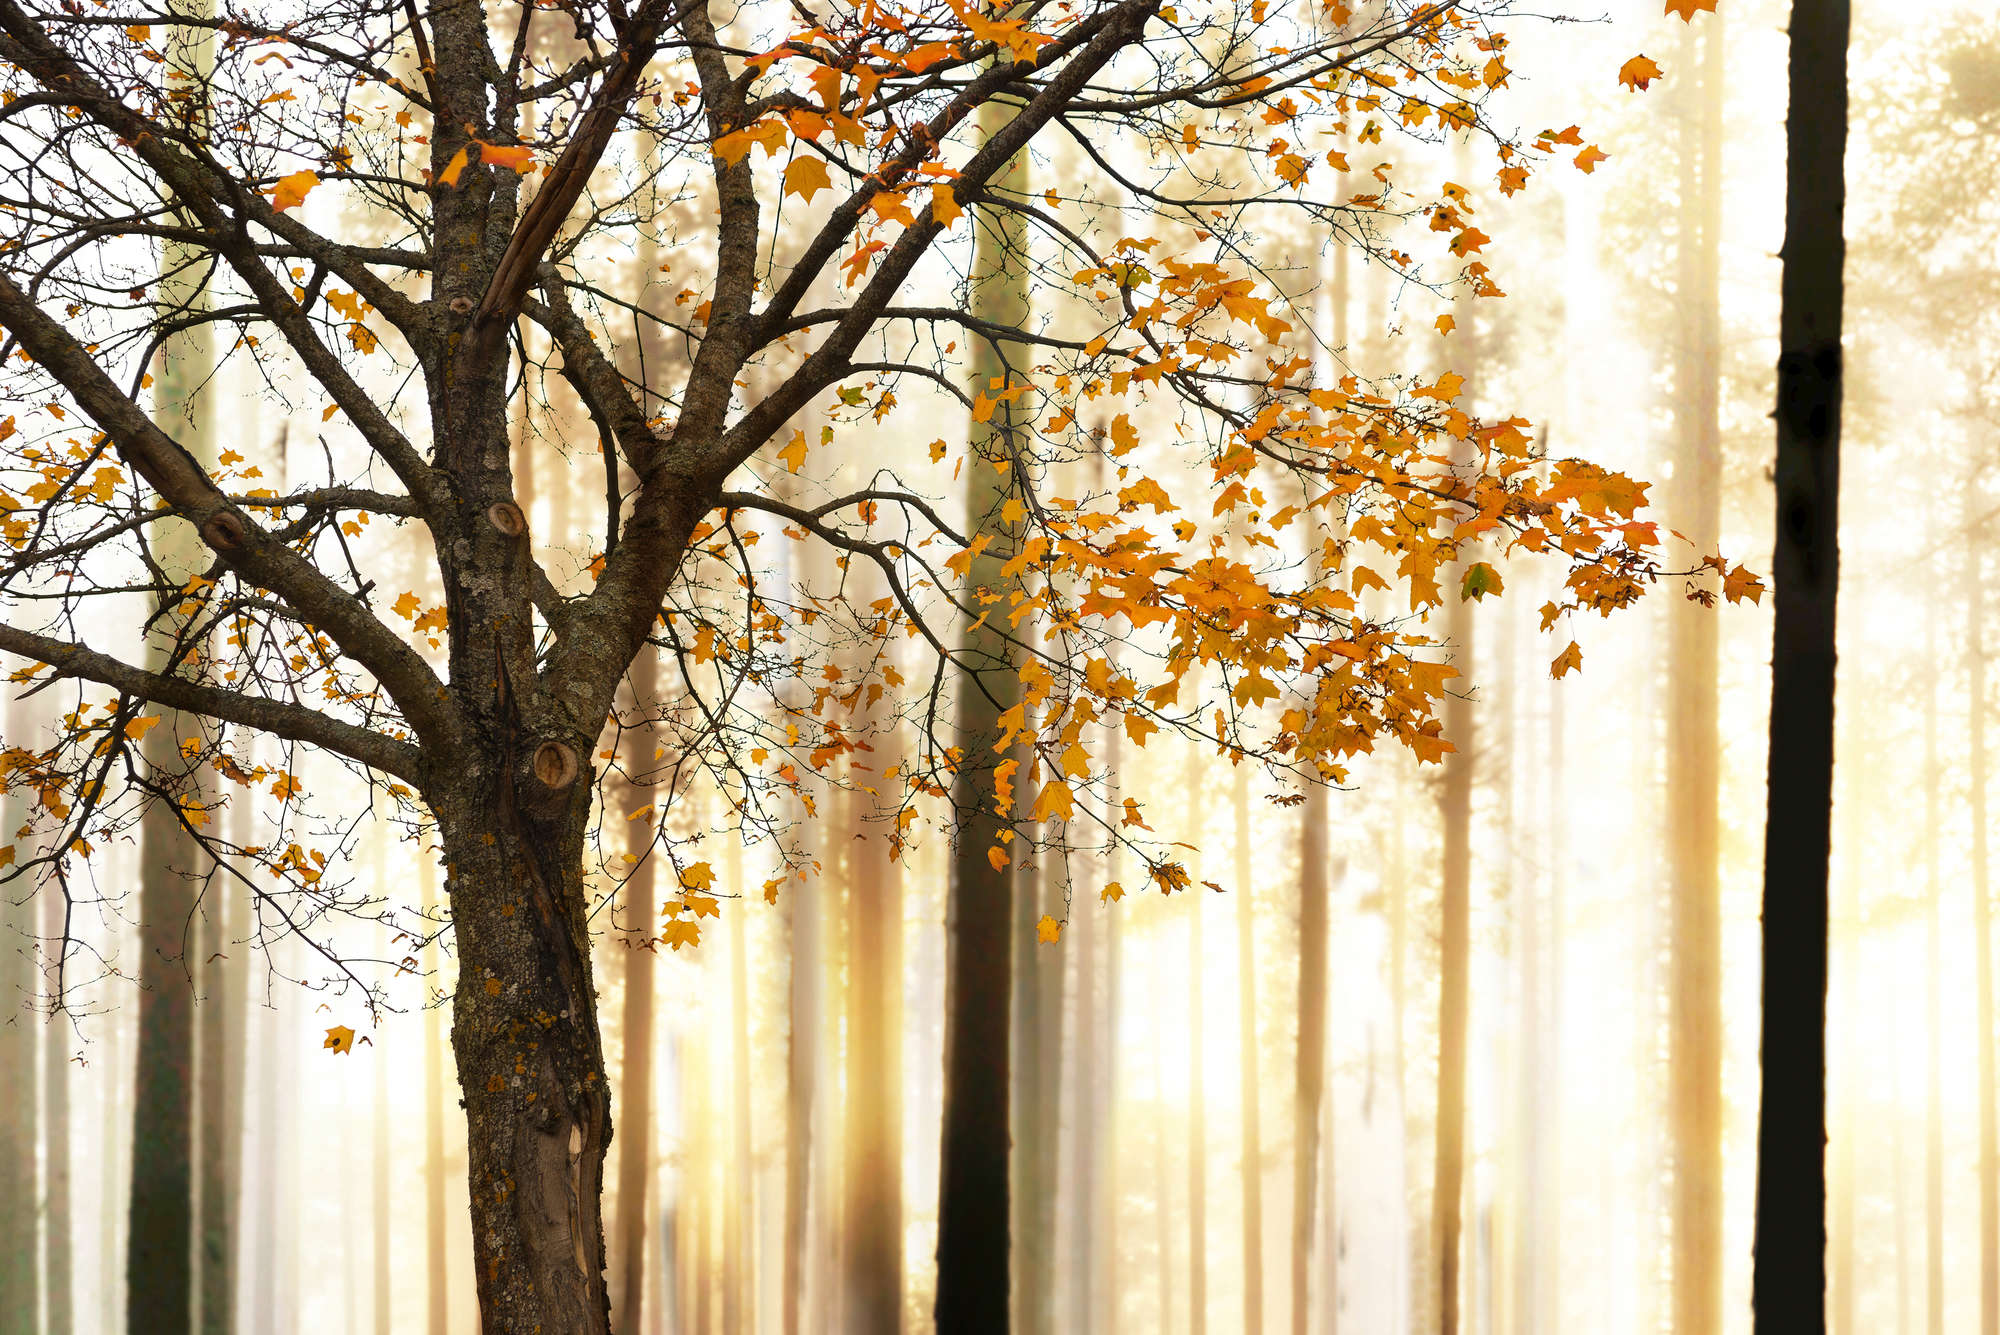             Papel pintado de naturaleza con motivo de bosque otoñal sobre vellón liso nacarado
        